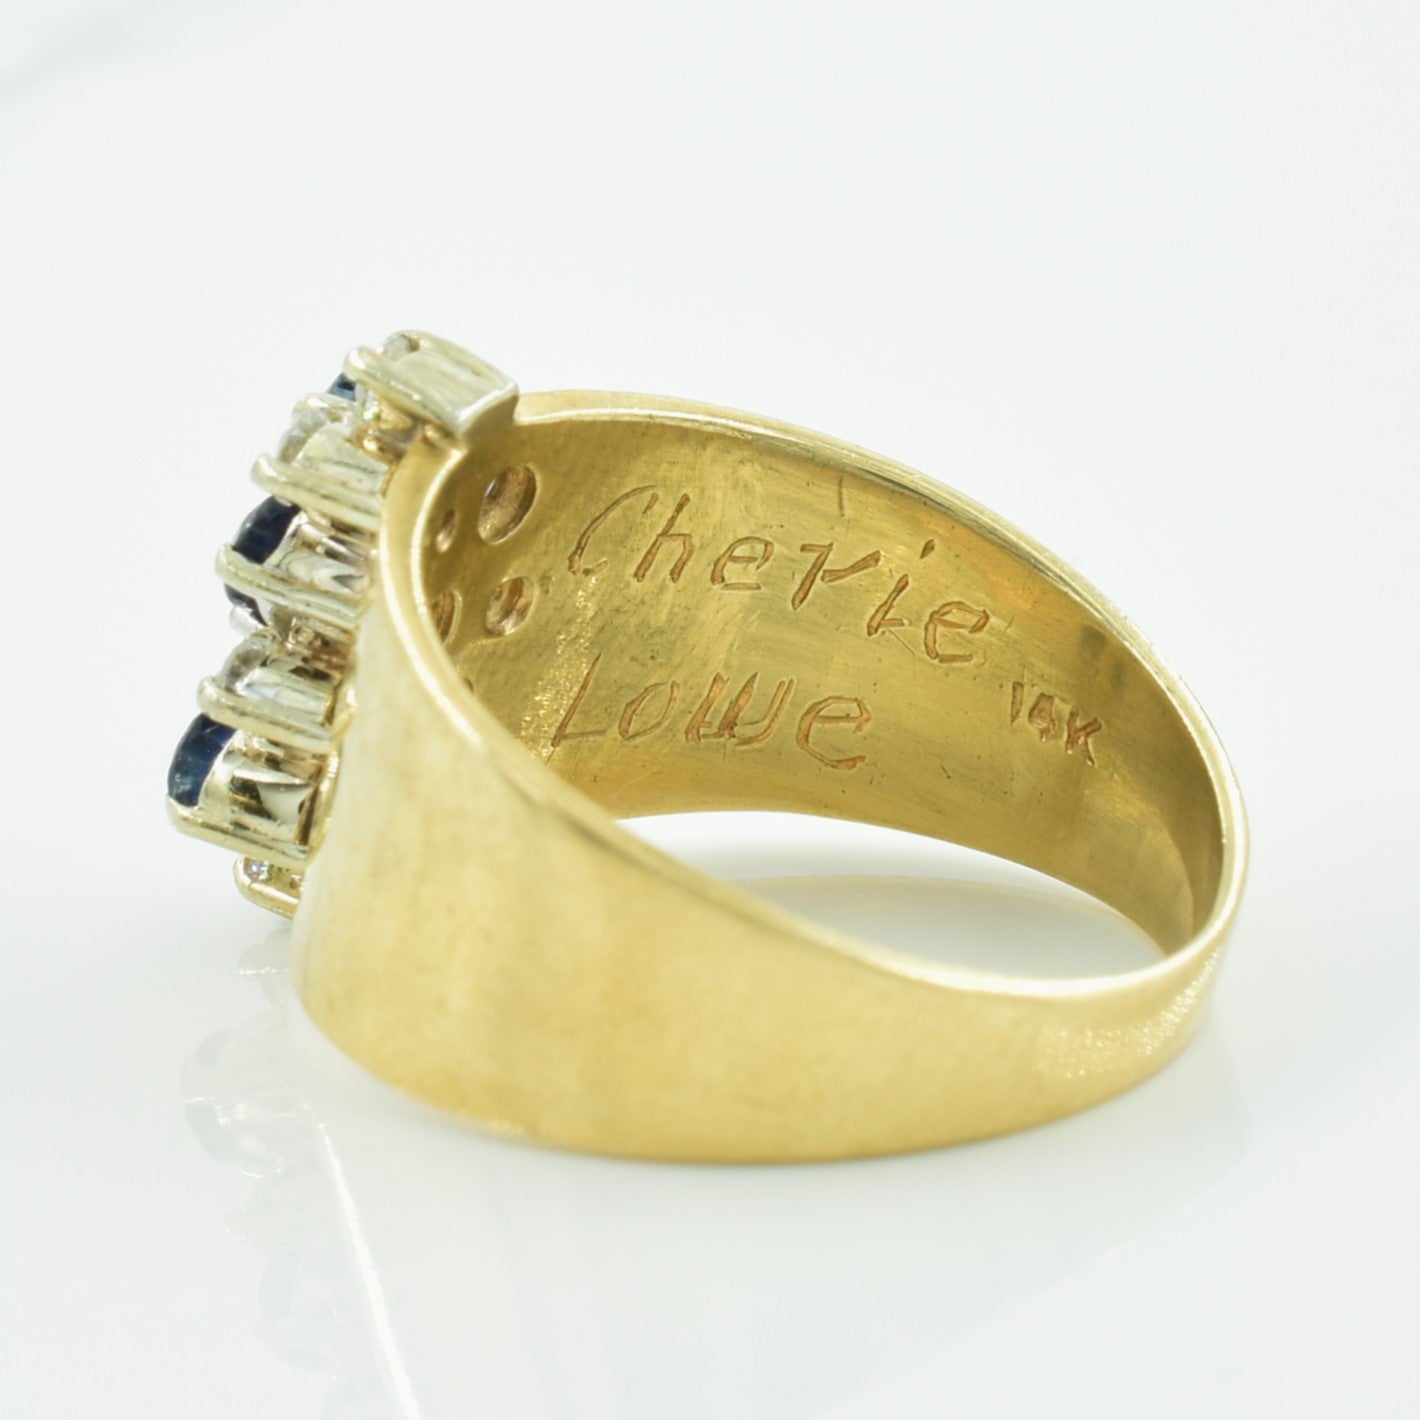 Sapphire & Diamond Ring | 0.40ctw, 0.09ctw | SZ 6.5 |